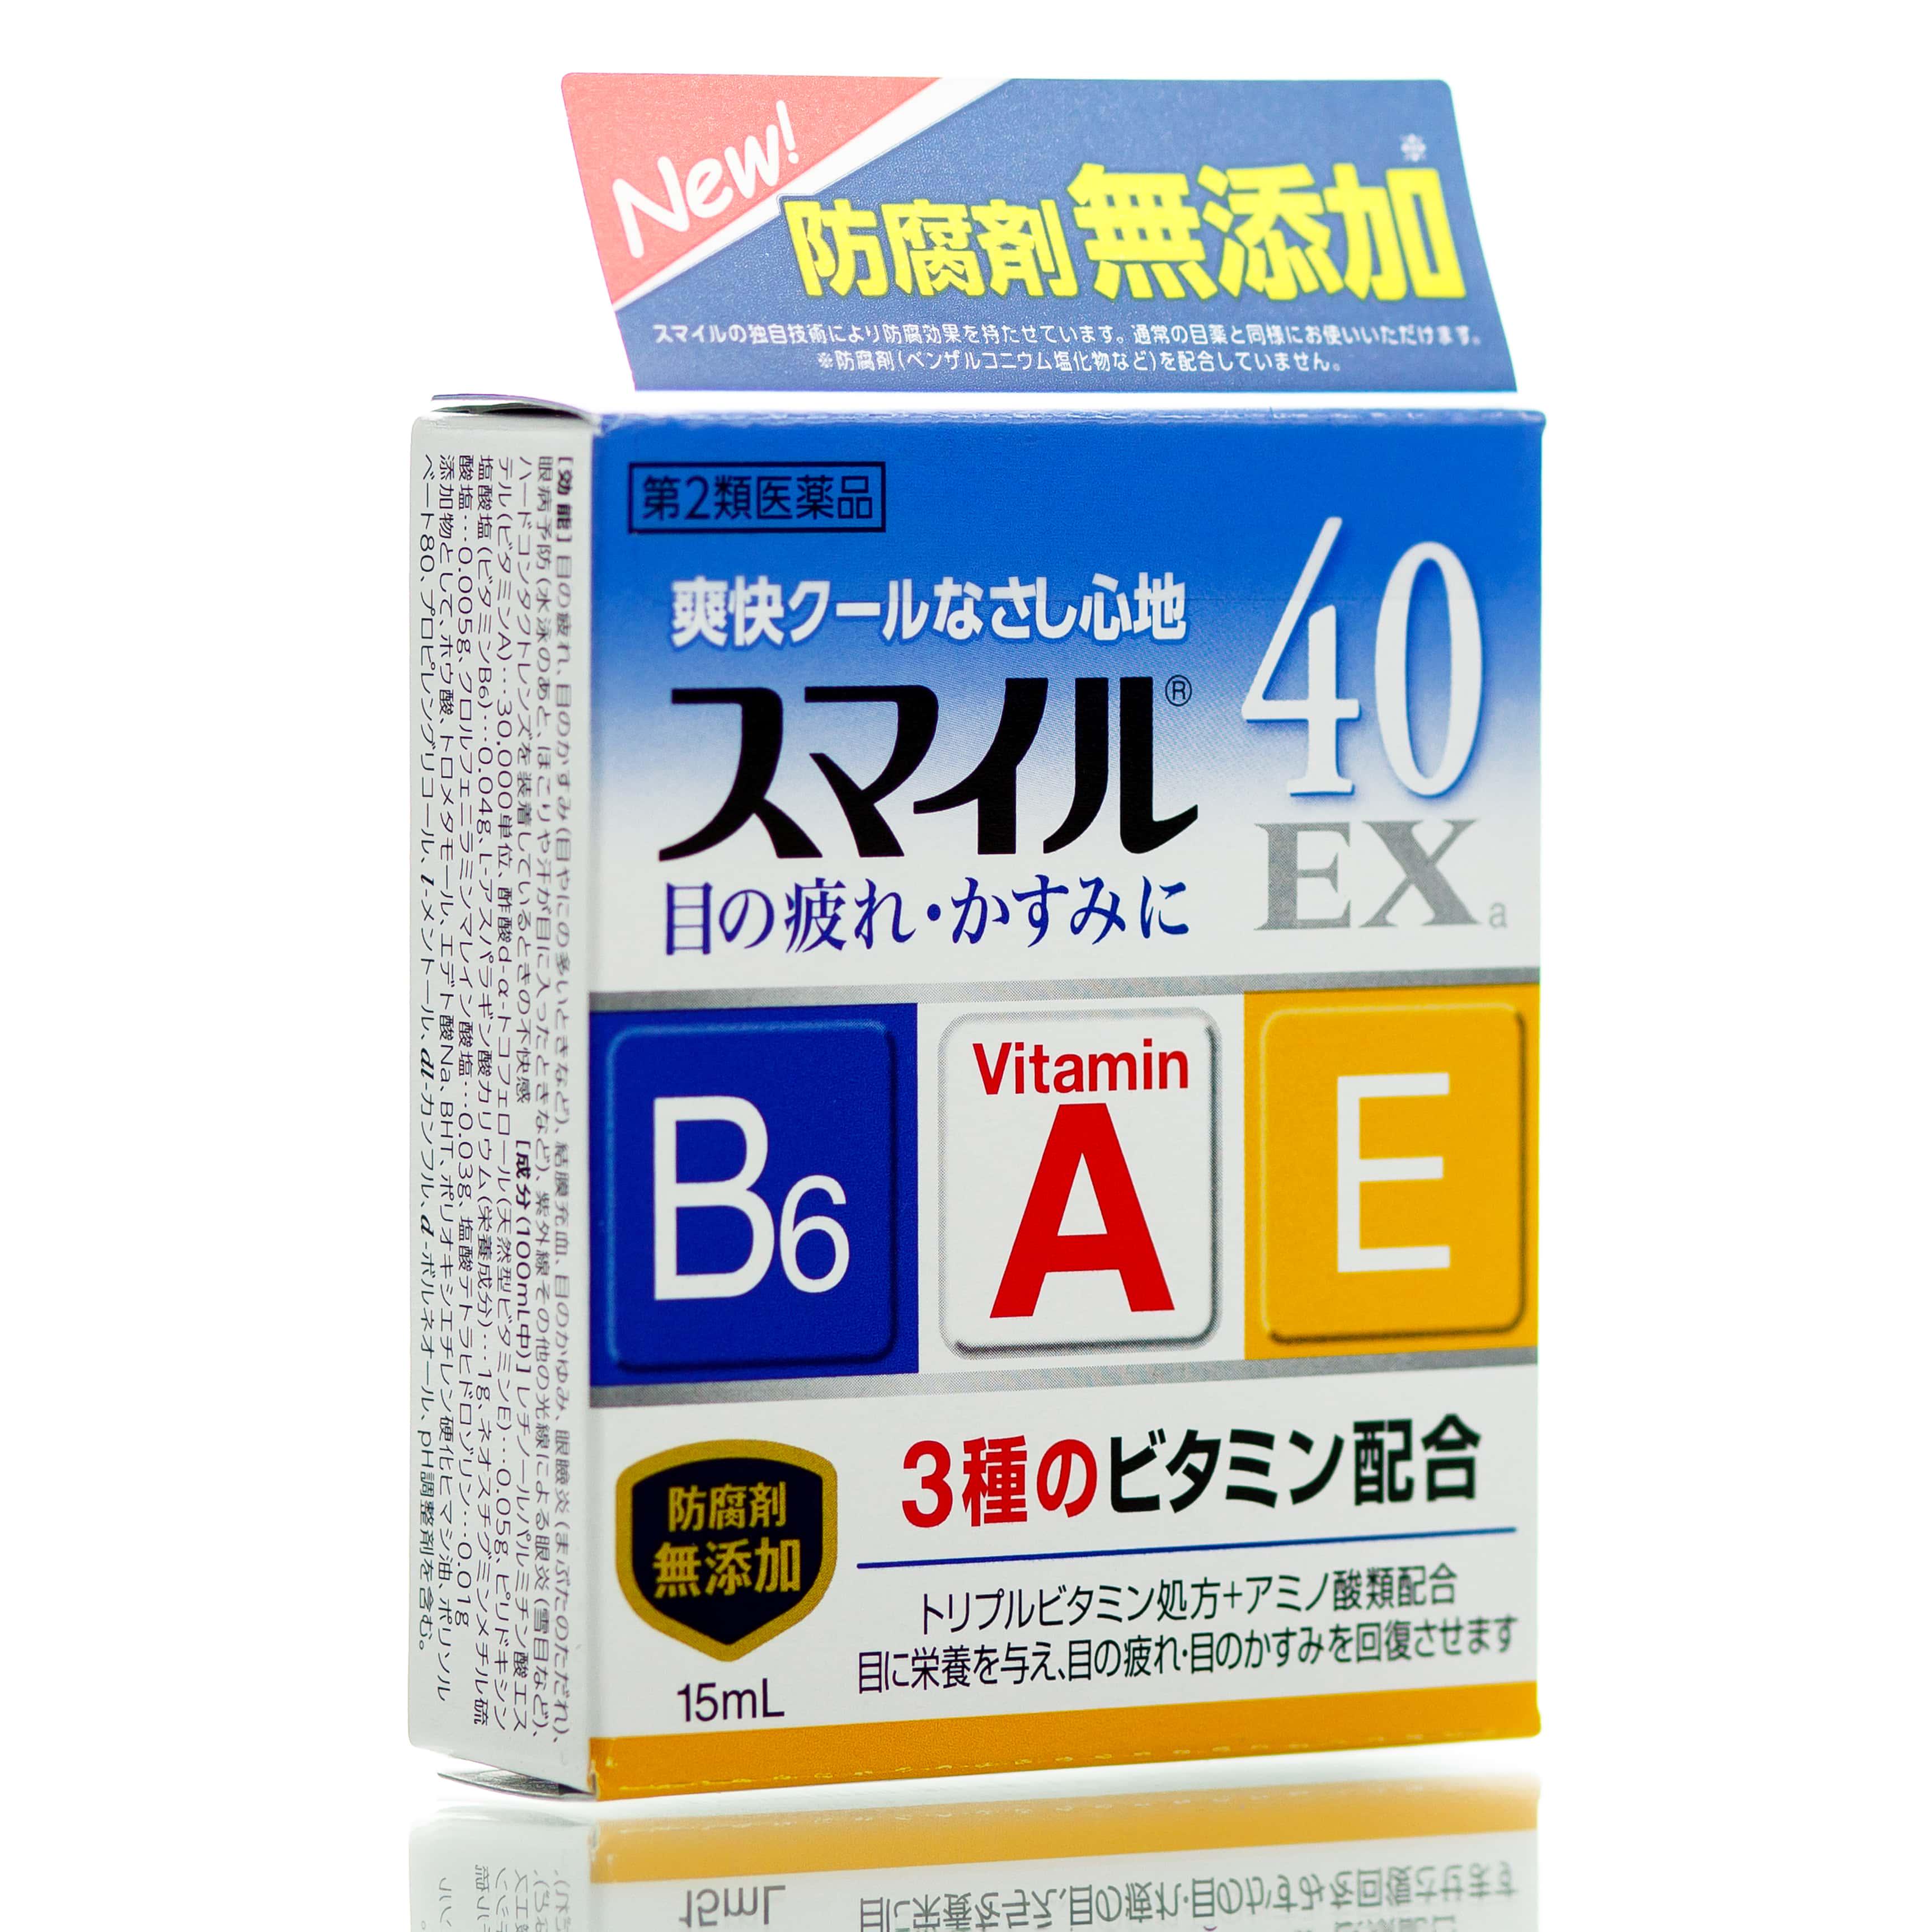 Краплі освіжаючі японські з вітамінами A/E та B6 Lion 40 EX 15 мл